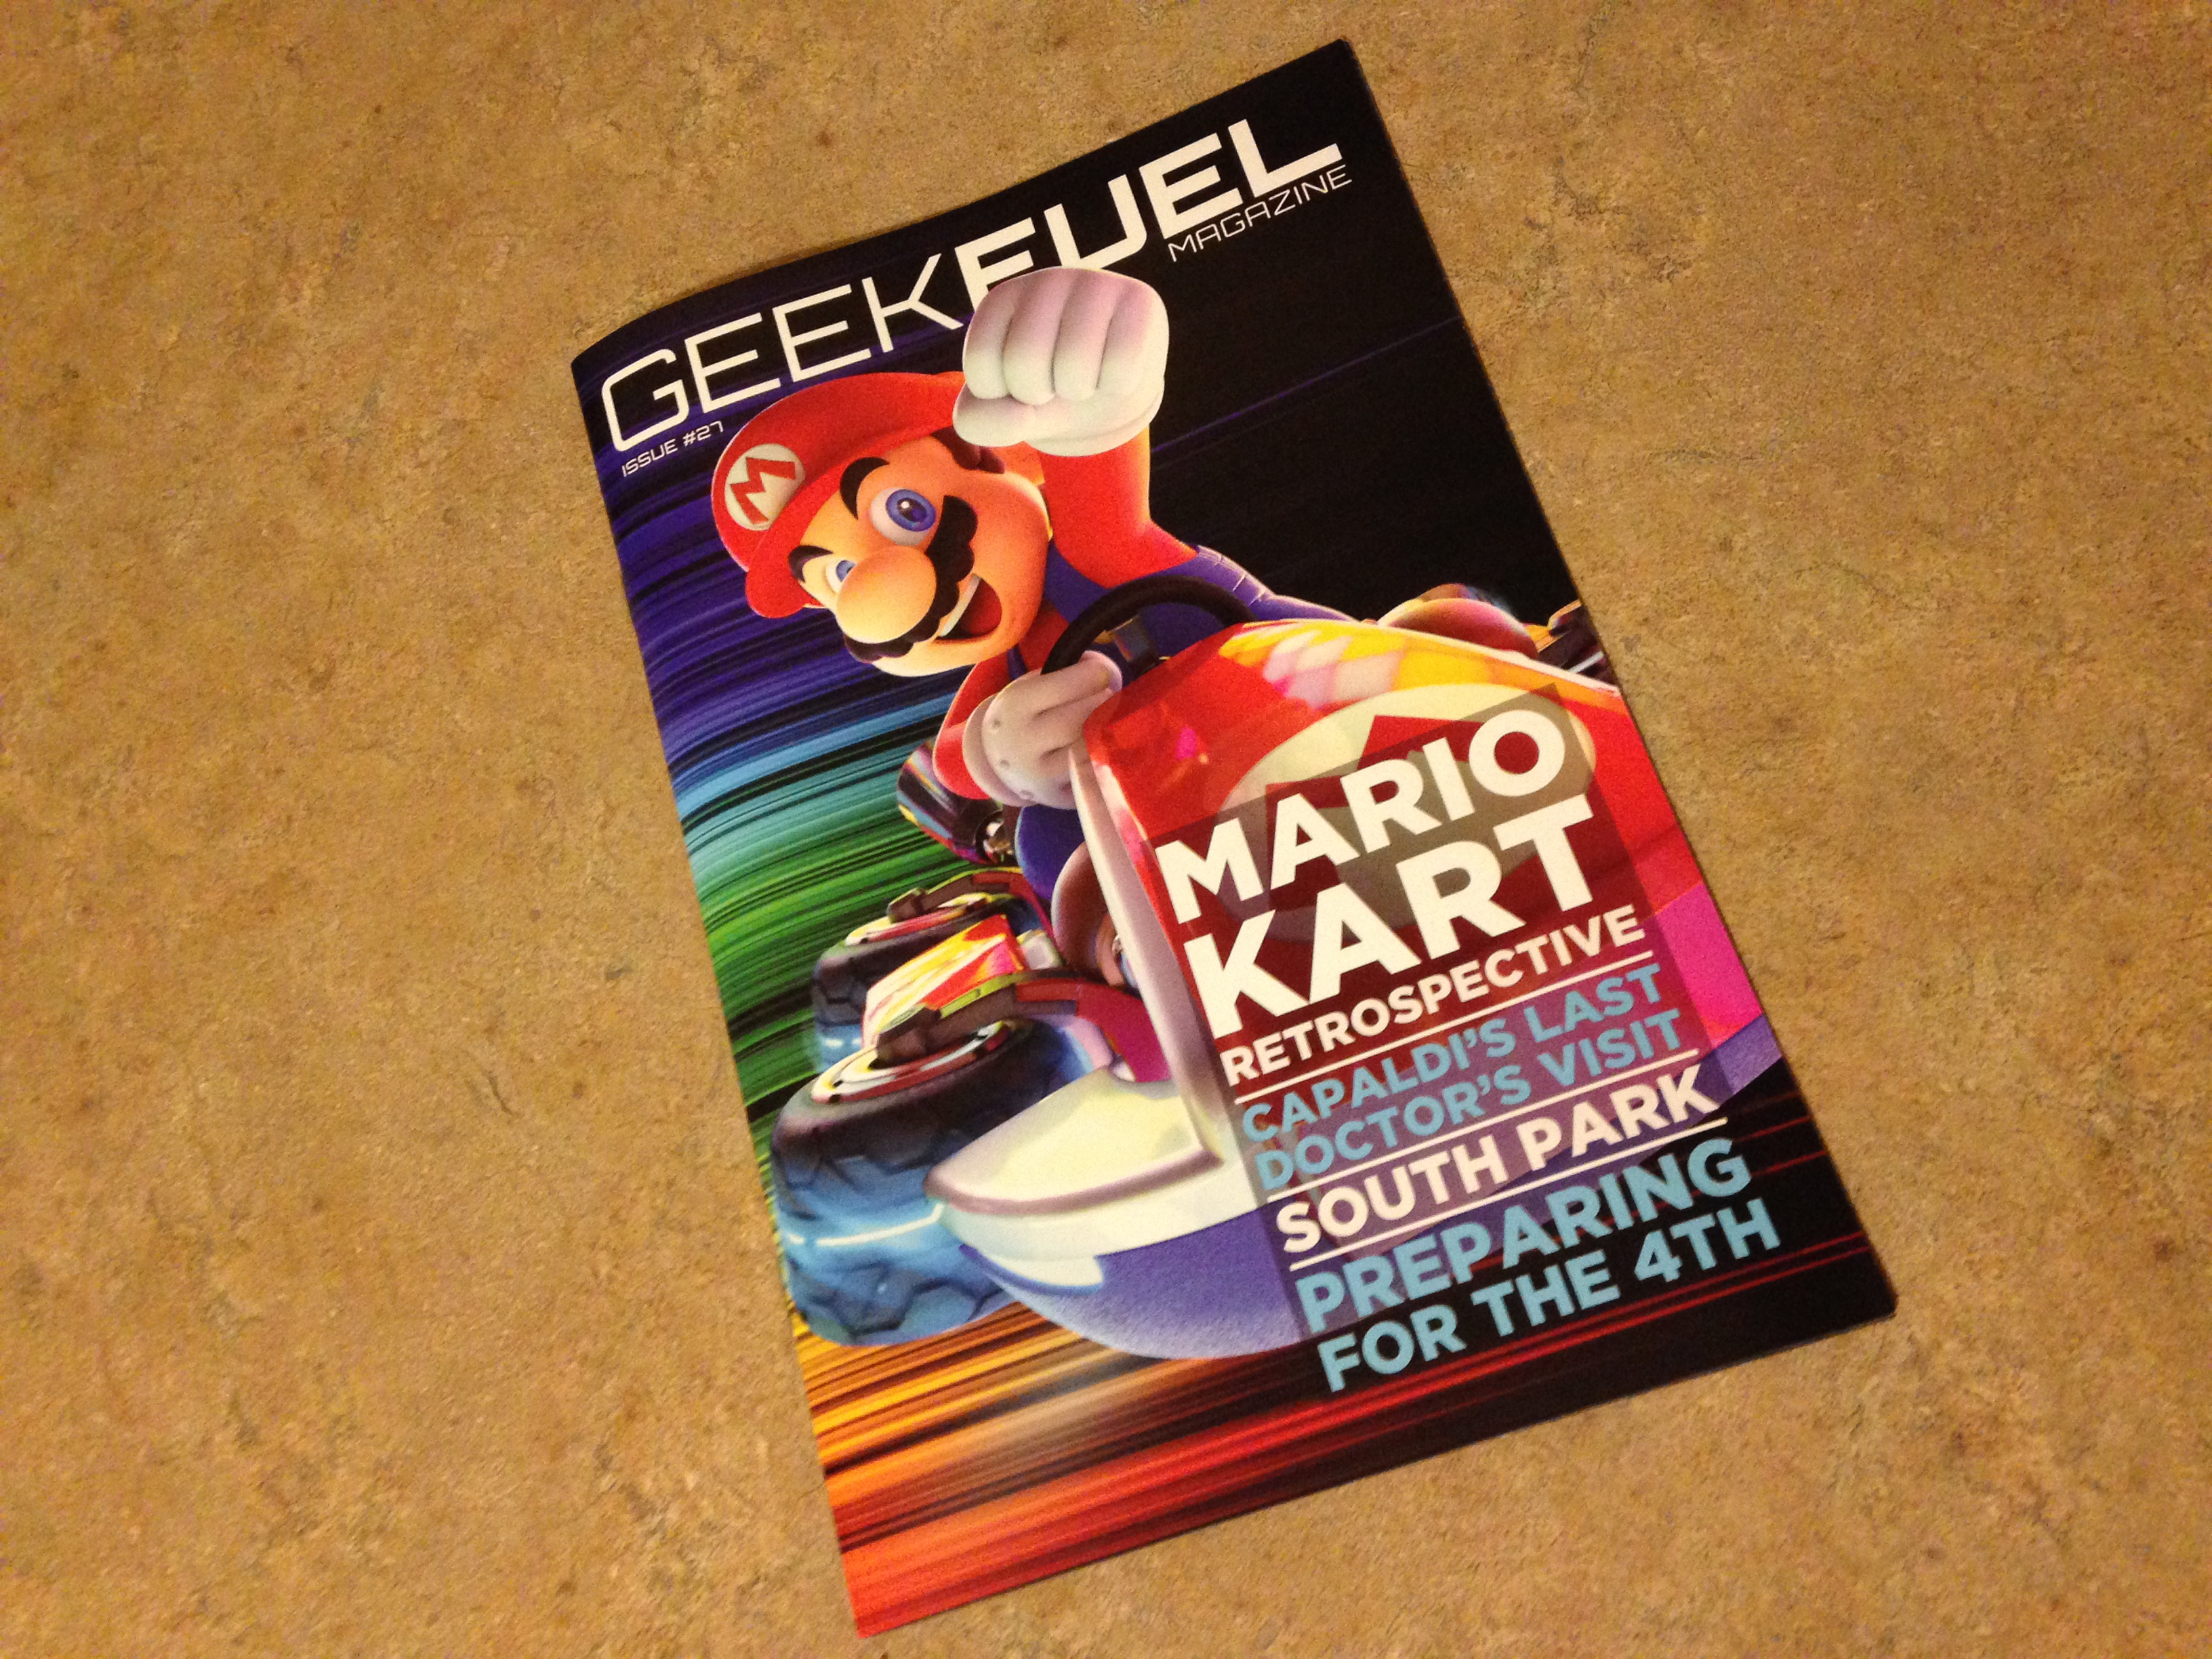 Geek fuel magazine